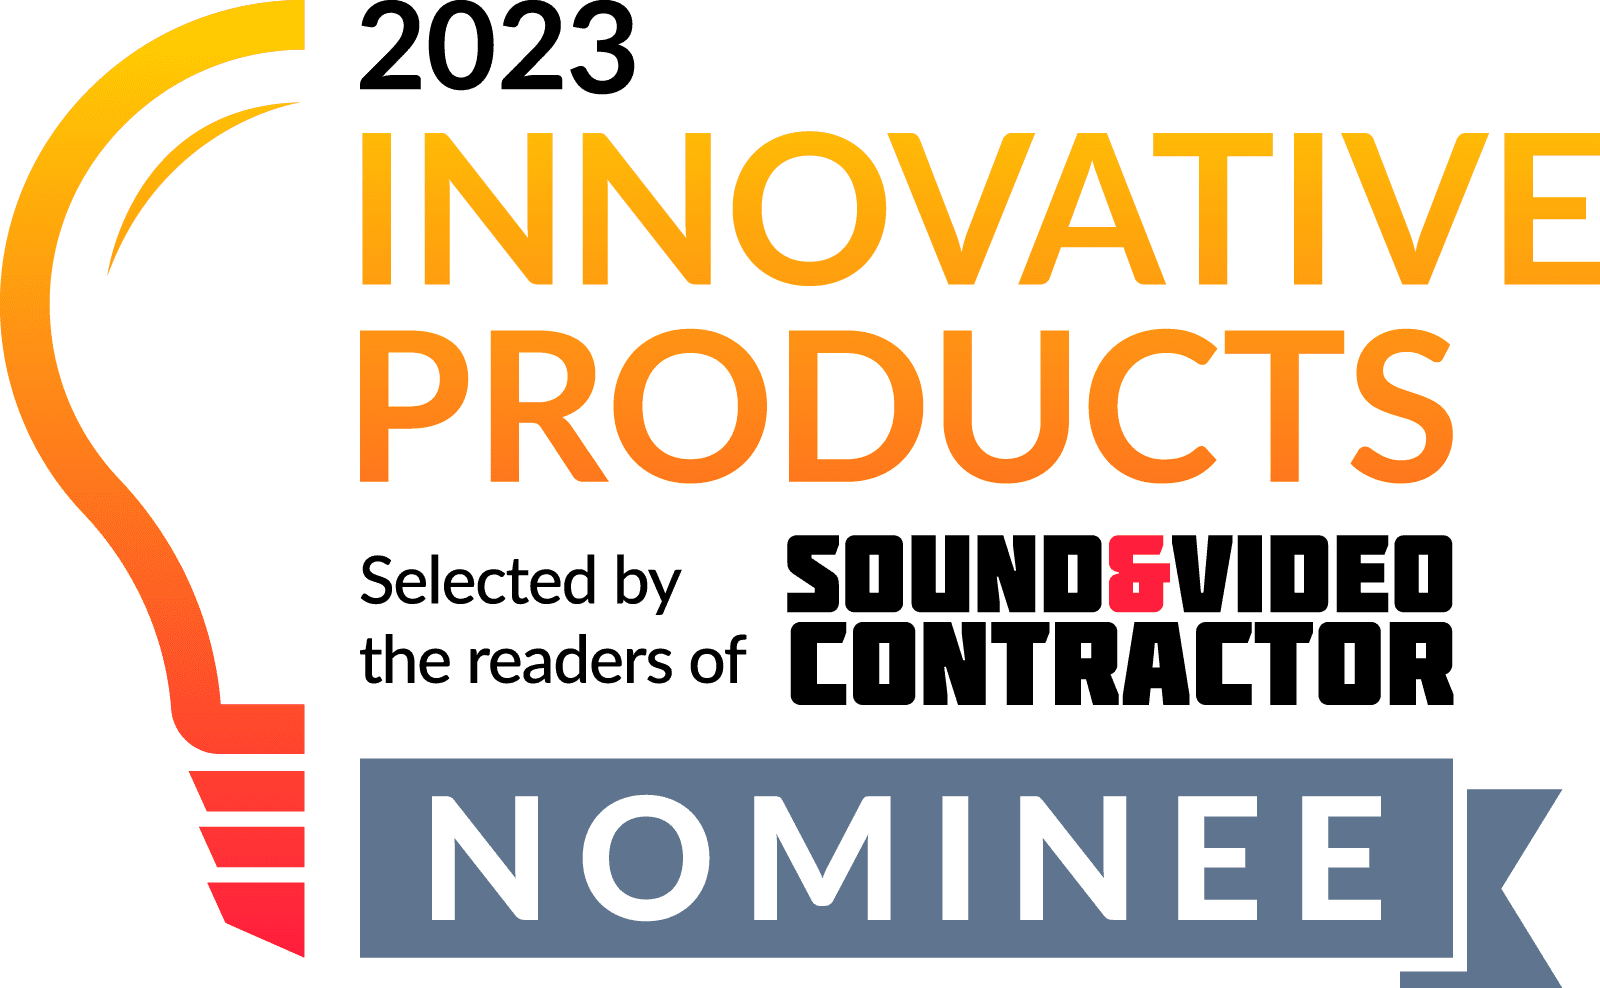 La plataforma nsign.tv nominada en la categoría "Digital Signage" en los premios INNOVATIVE PRODUCTS 2023!